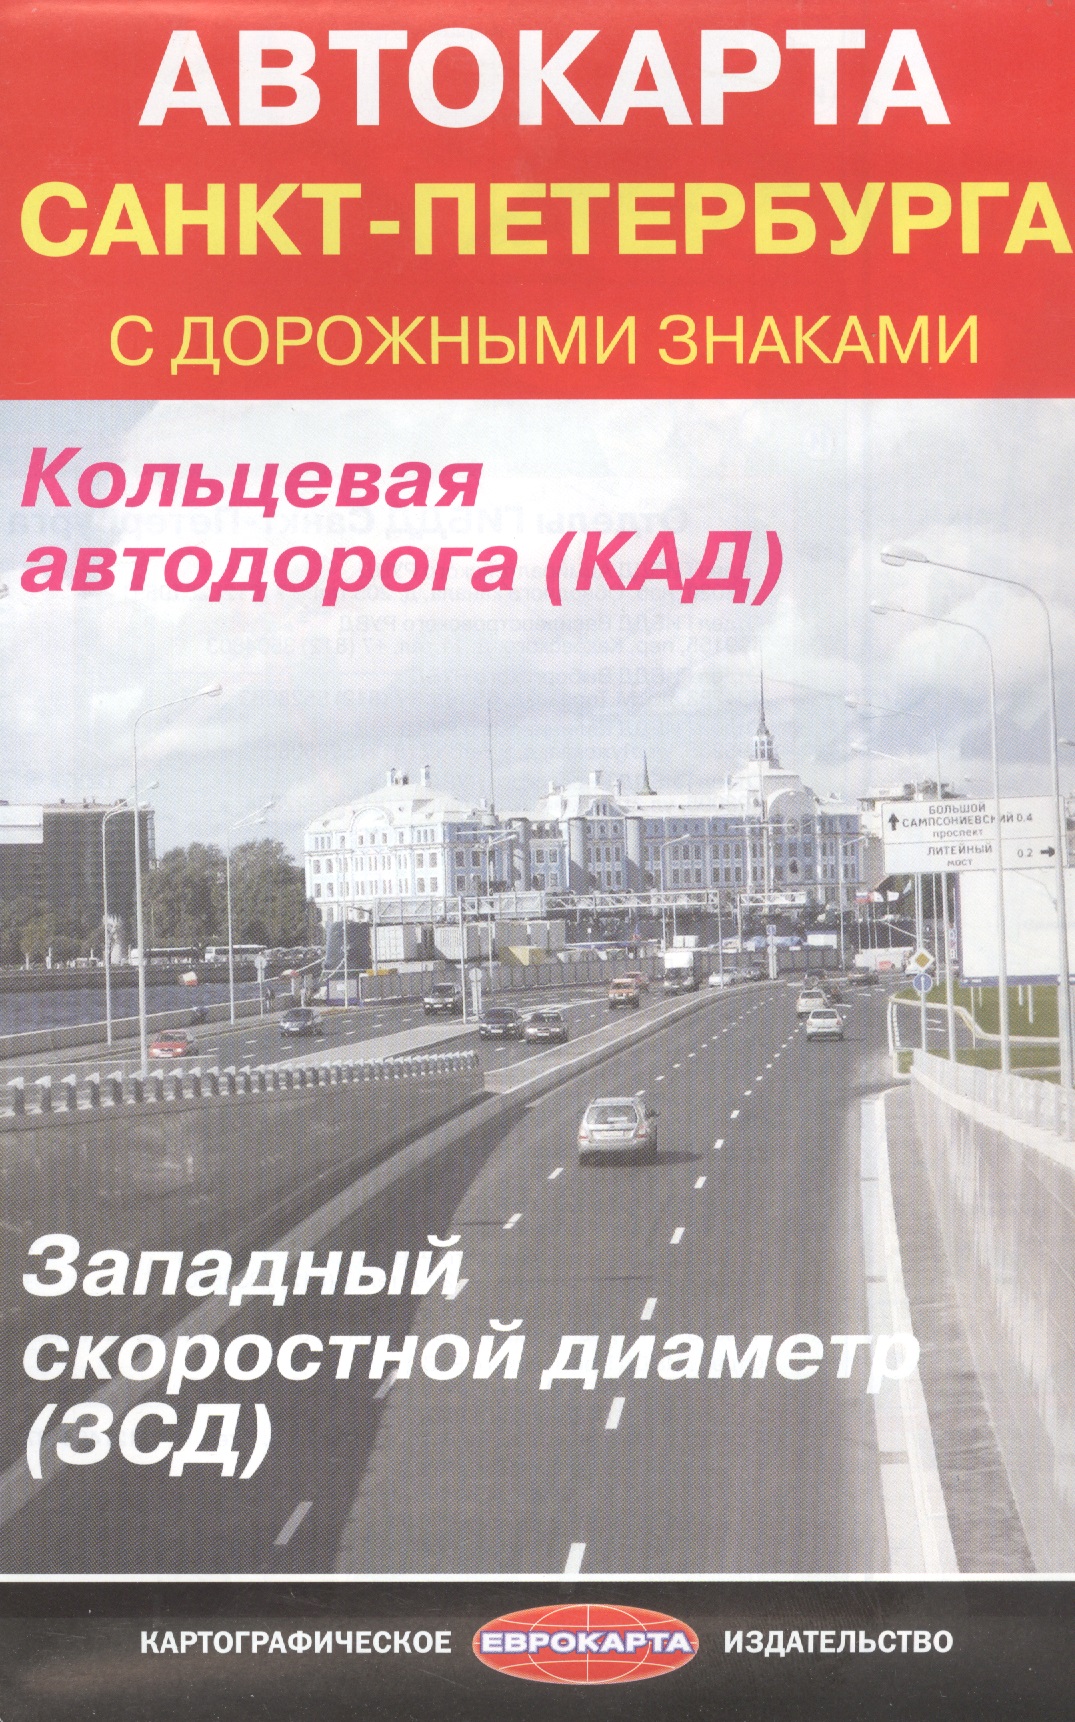 санкт петербург масштаб 1 35 000 историческая часть города масштаб 1 20 000 туристская карта Автокарта Санкт-Петербурга с дорожными знаками